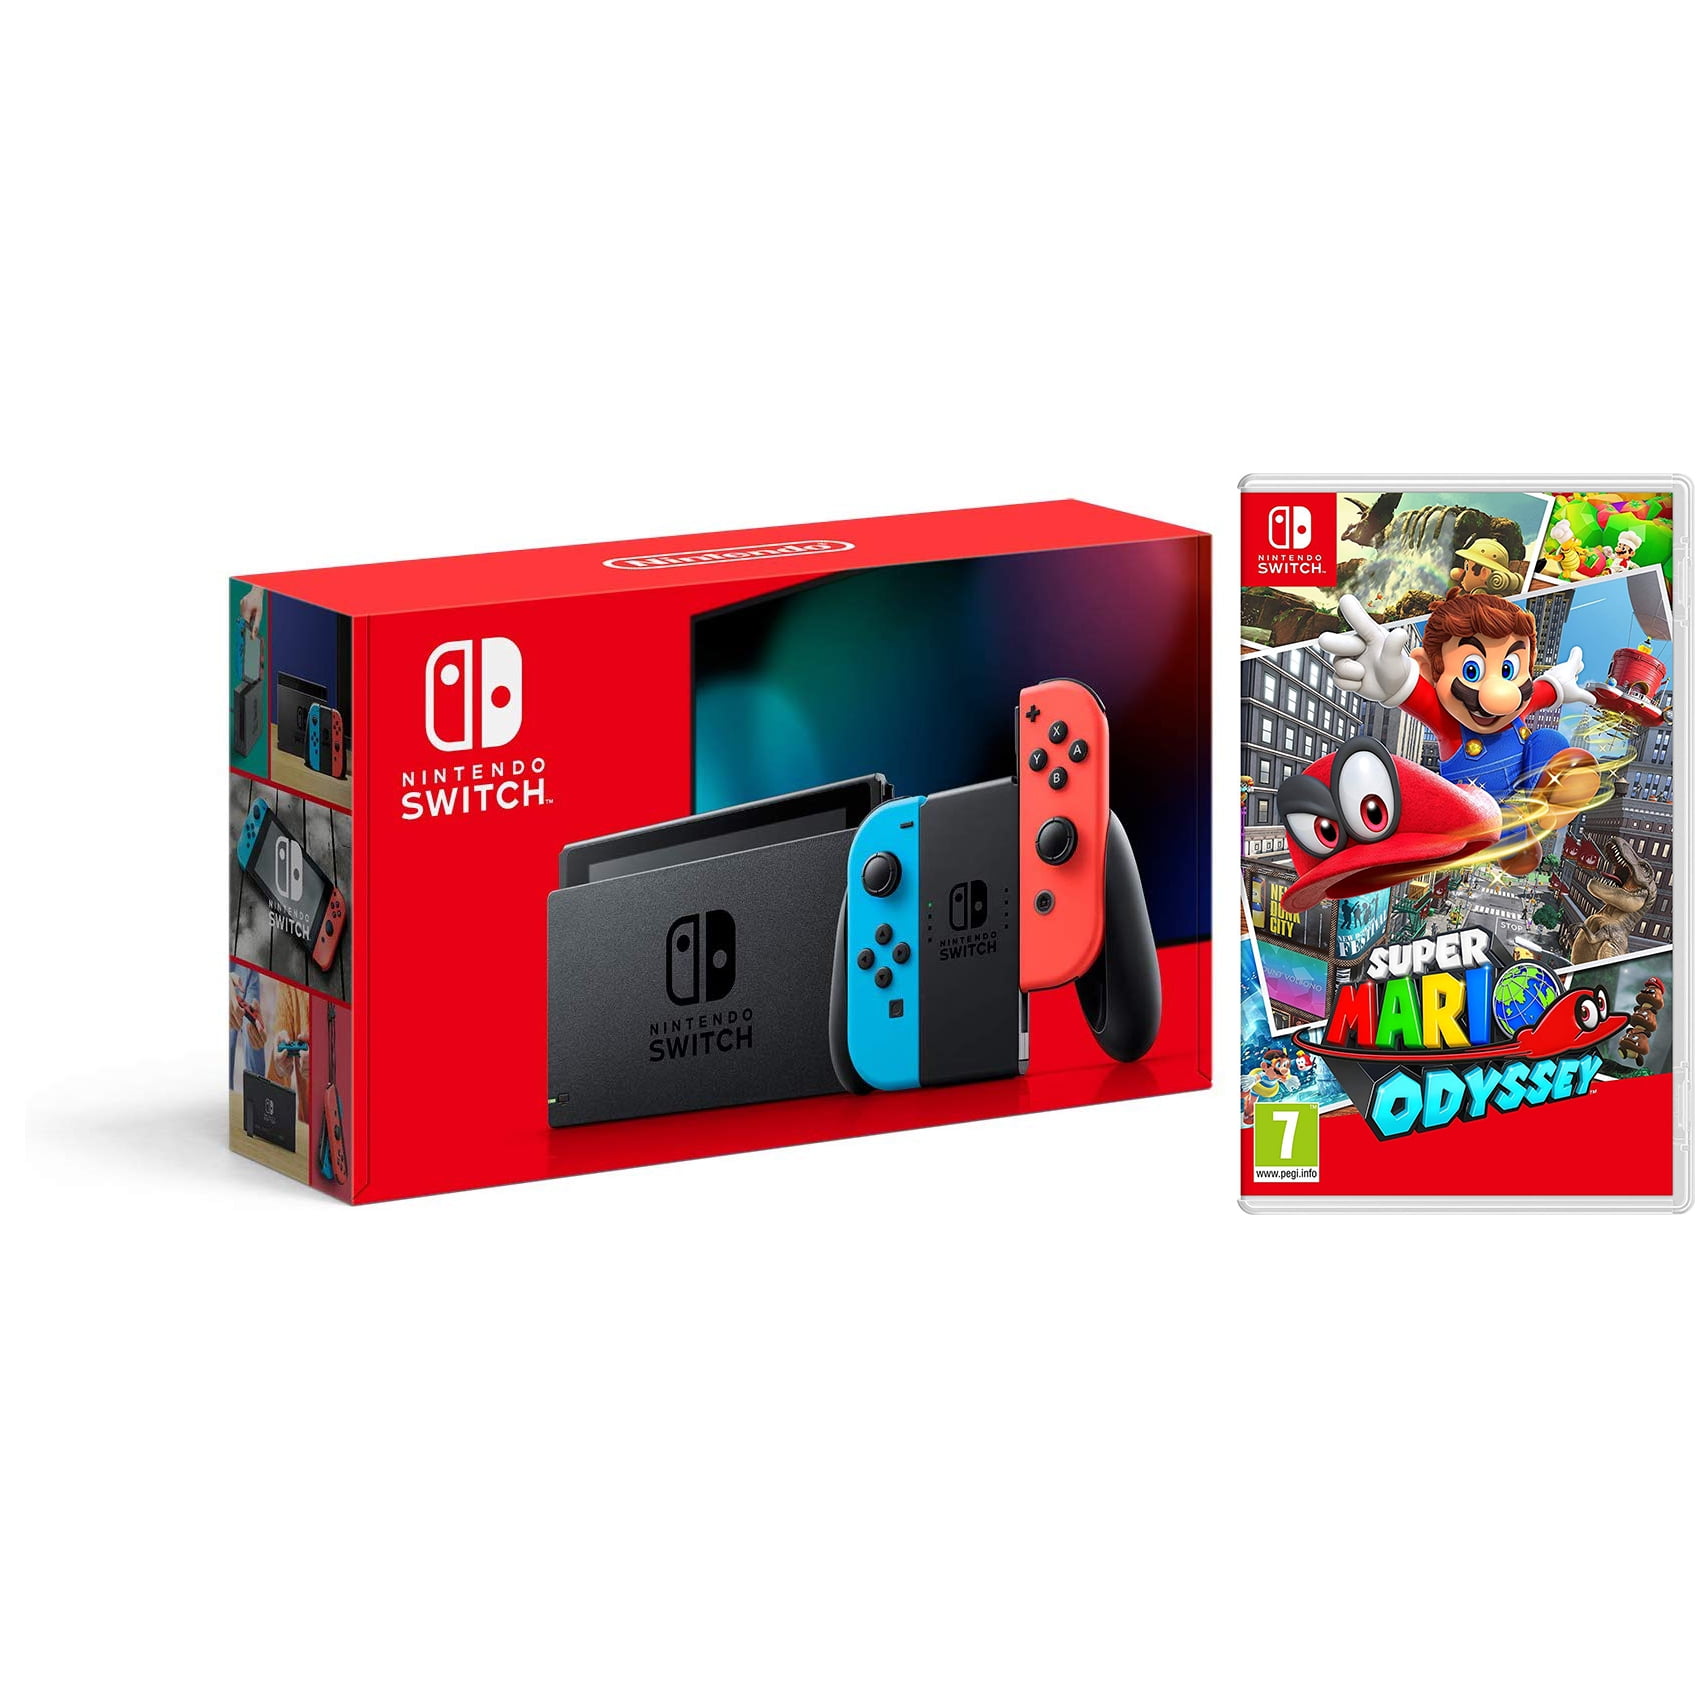 Nintendo Switch 32GB Console - Neon Joy-Con - New Version with Super Mario Odyssey Bundle